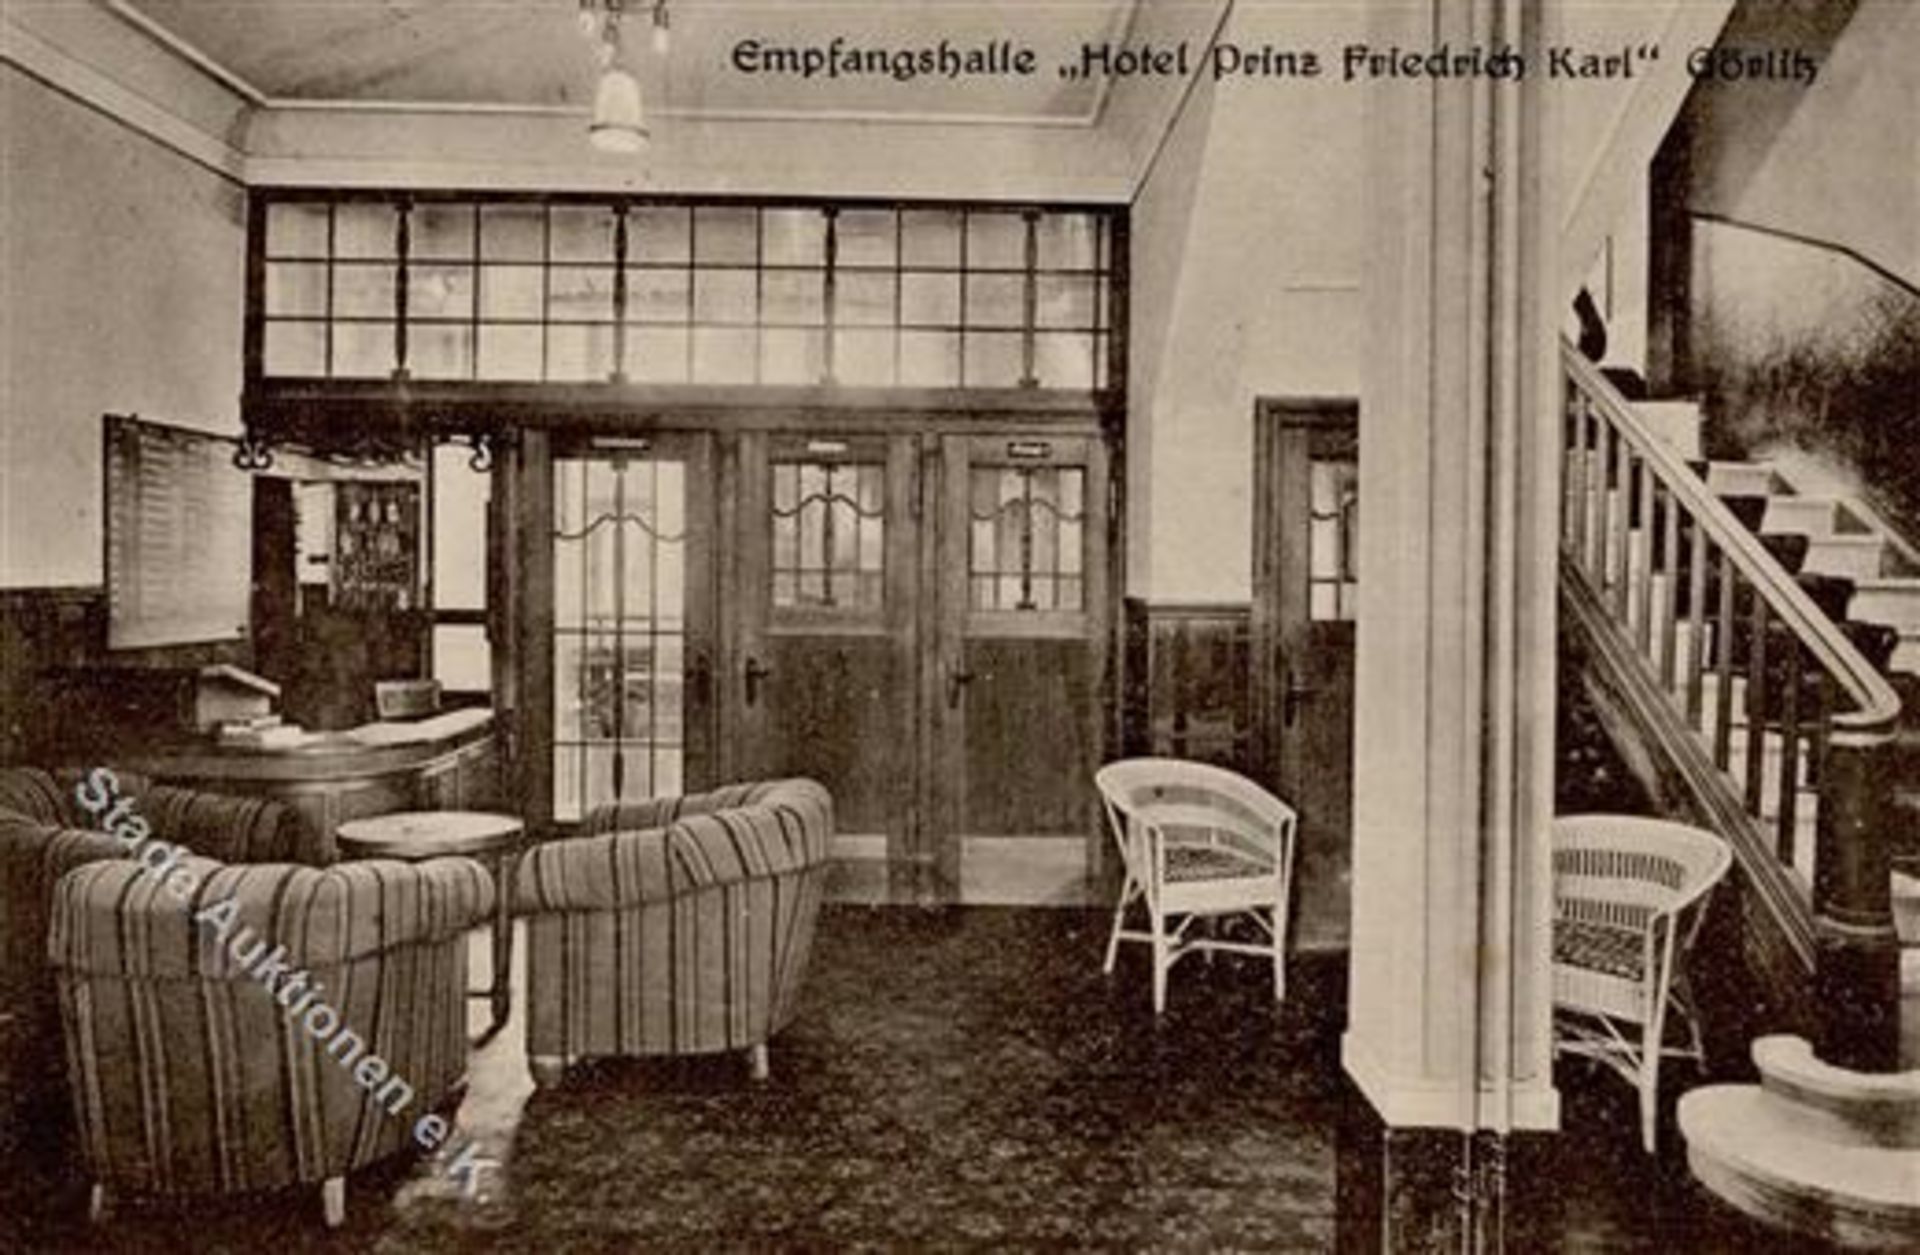 GÖRLITZ (o-8900) - Empfangshalle Hotel Prinz Friedrich Karl IDieses Los wird in einer online-Auktion